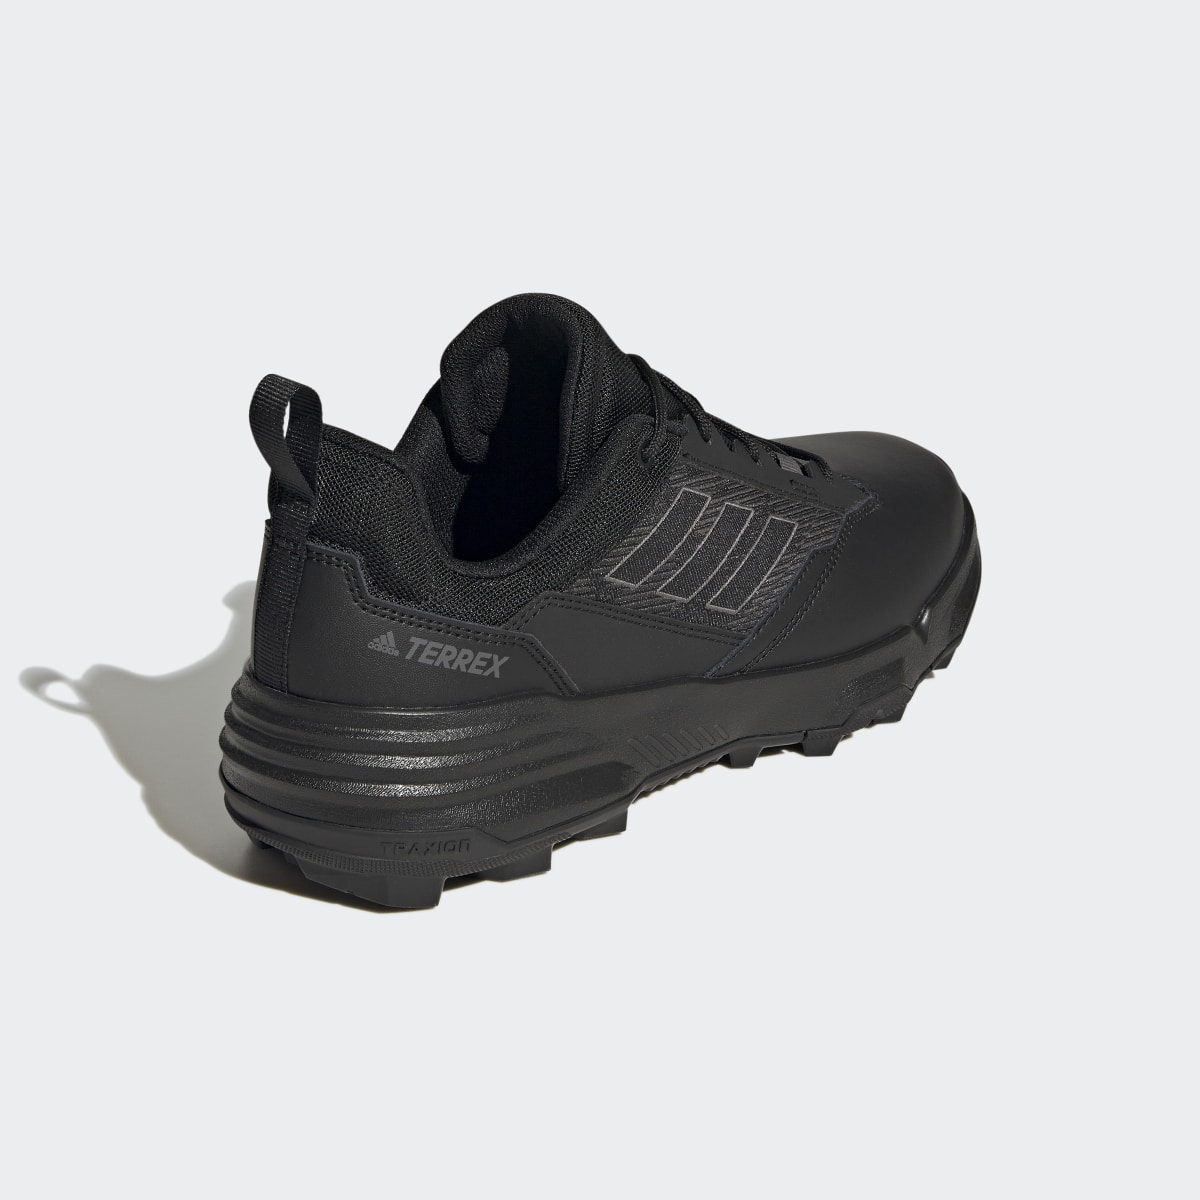 Adidas Unity Leather Hiking Shoes. 8